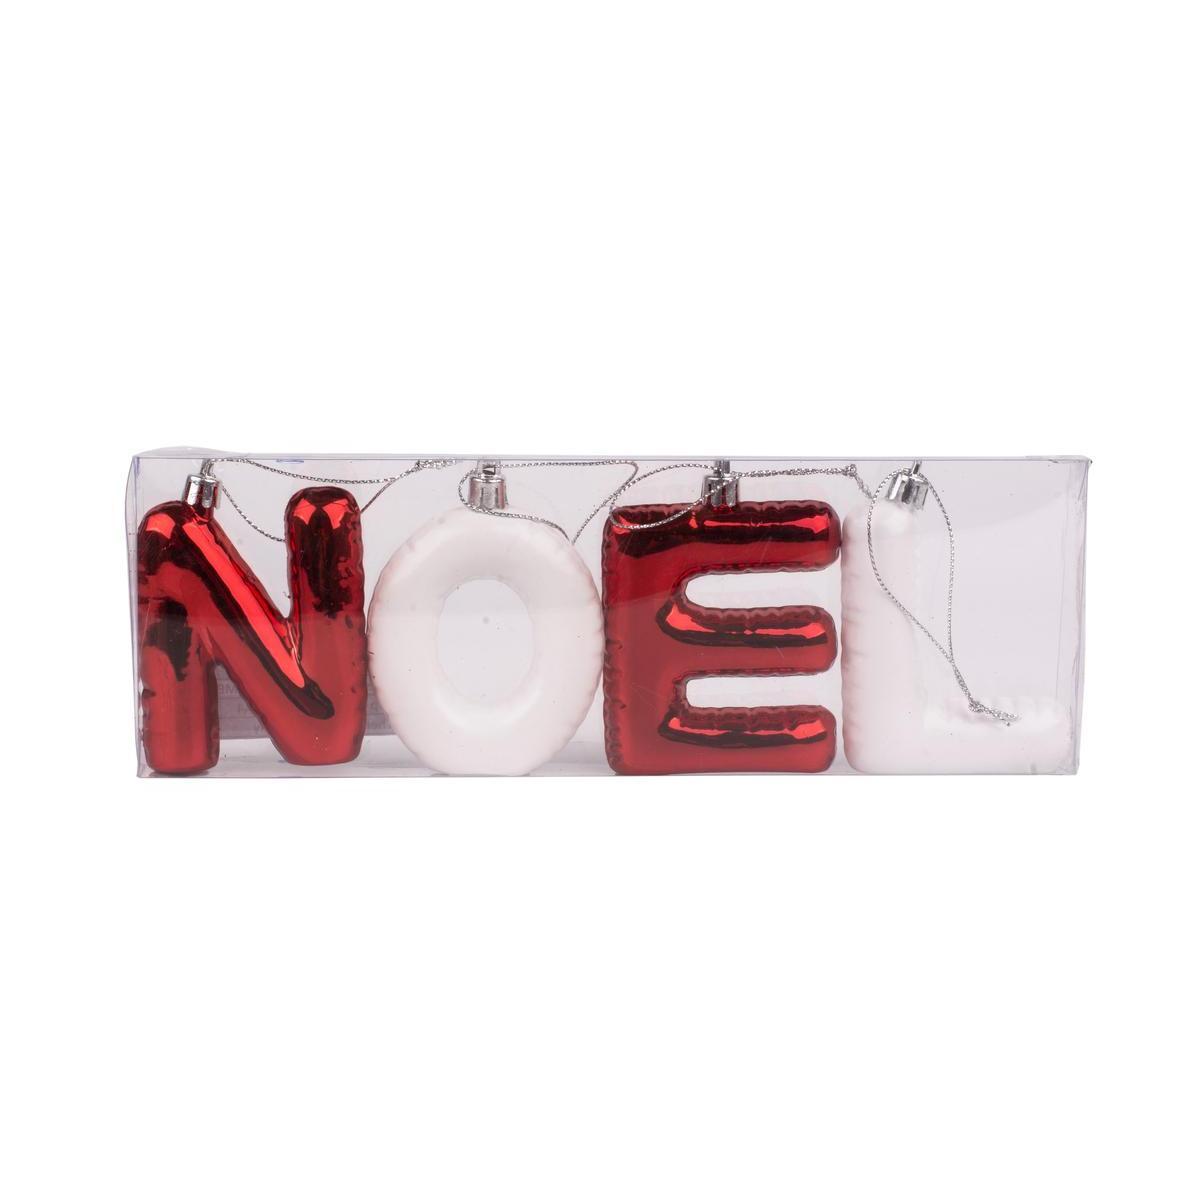 4 suspensions lettres de Noël - 6 x 2 x 8 cm - Rouge, blanc